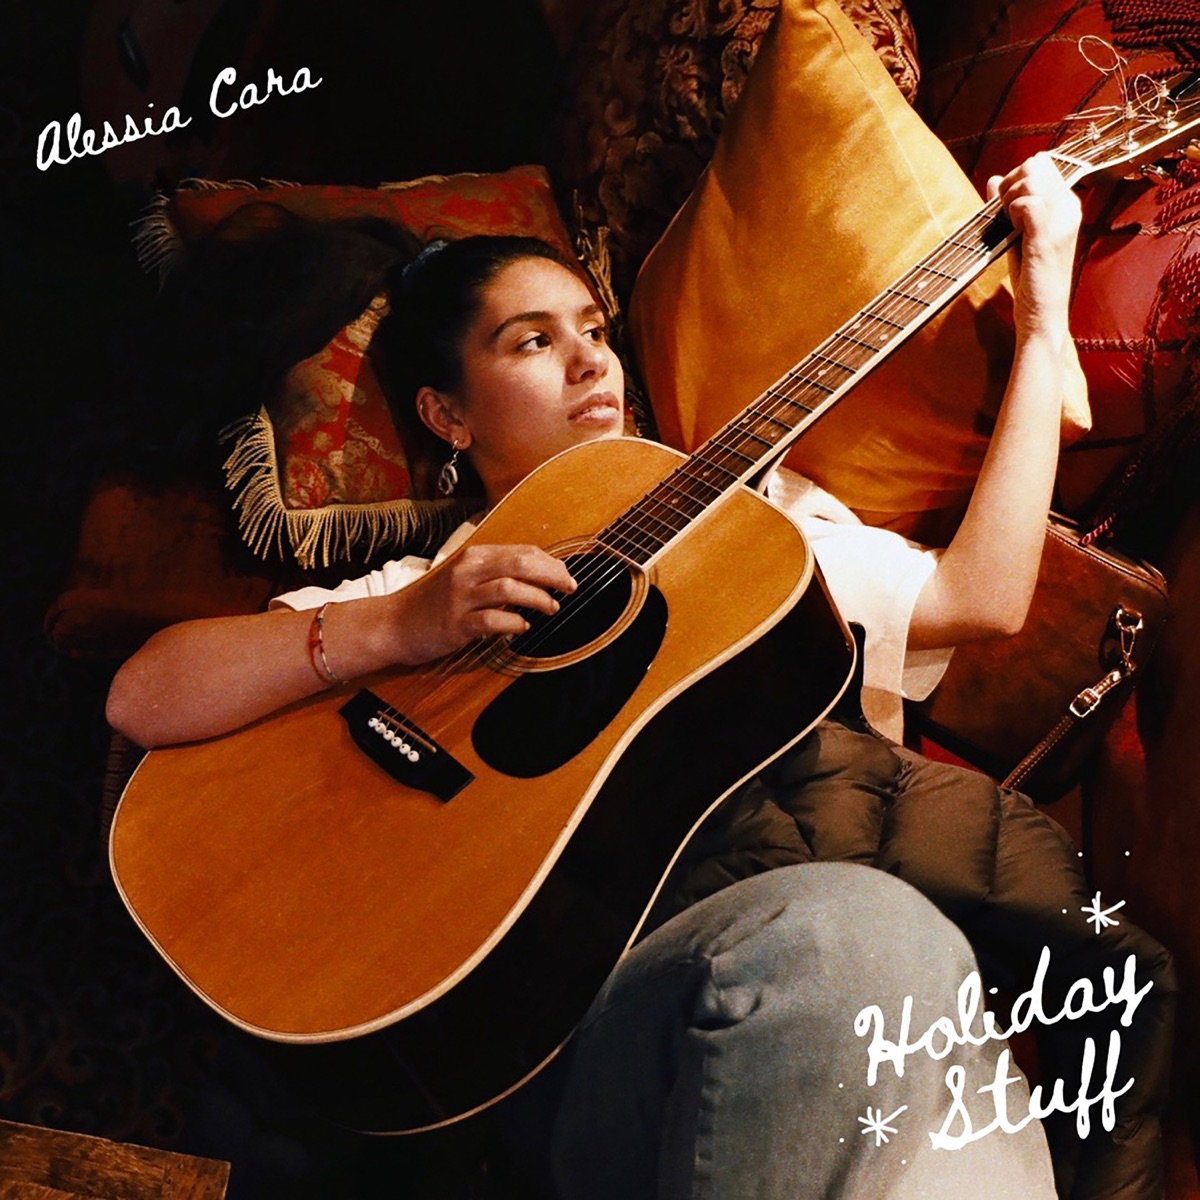 Alessia Cara – Unboxing Intro Lyrics